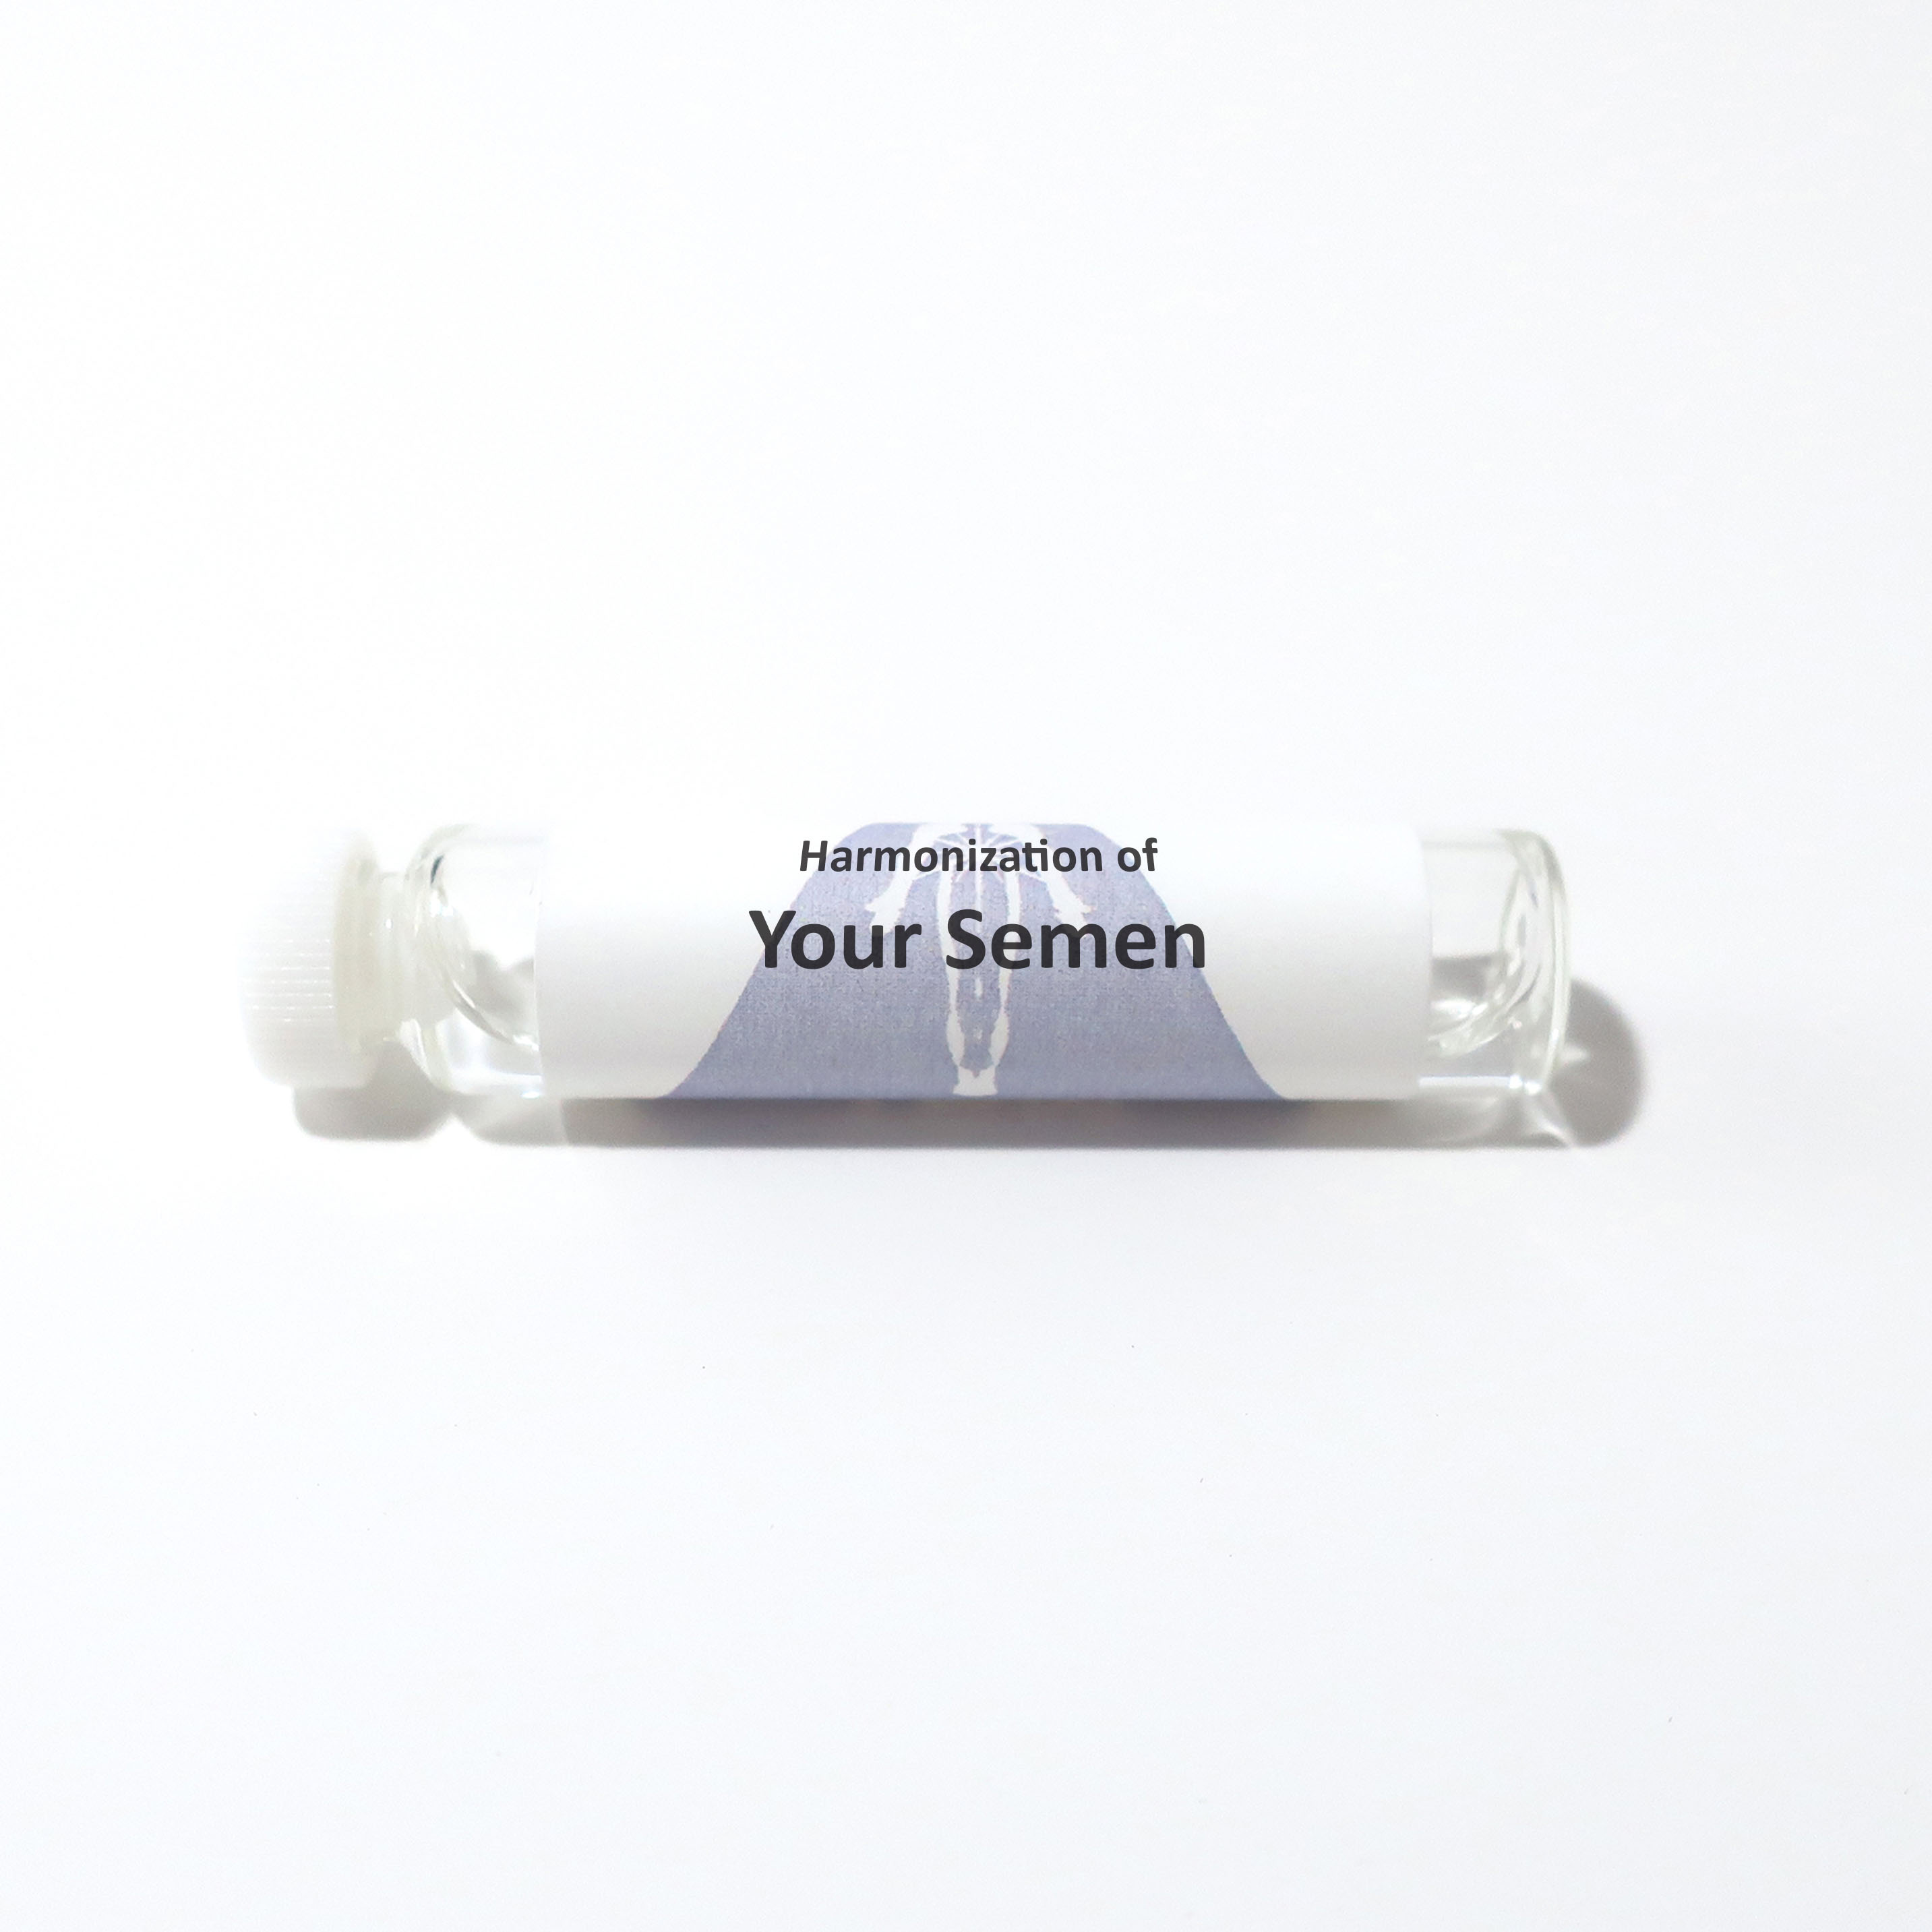 Your Semen